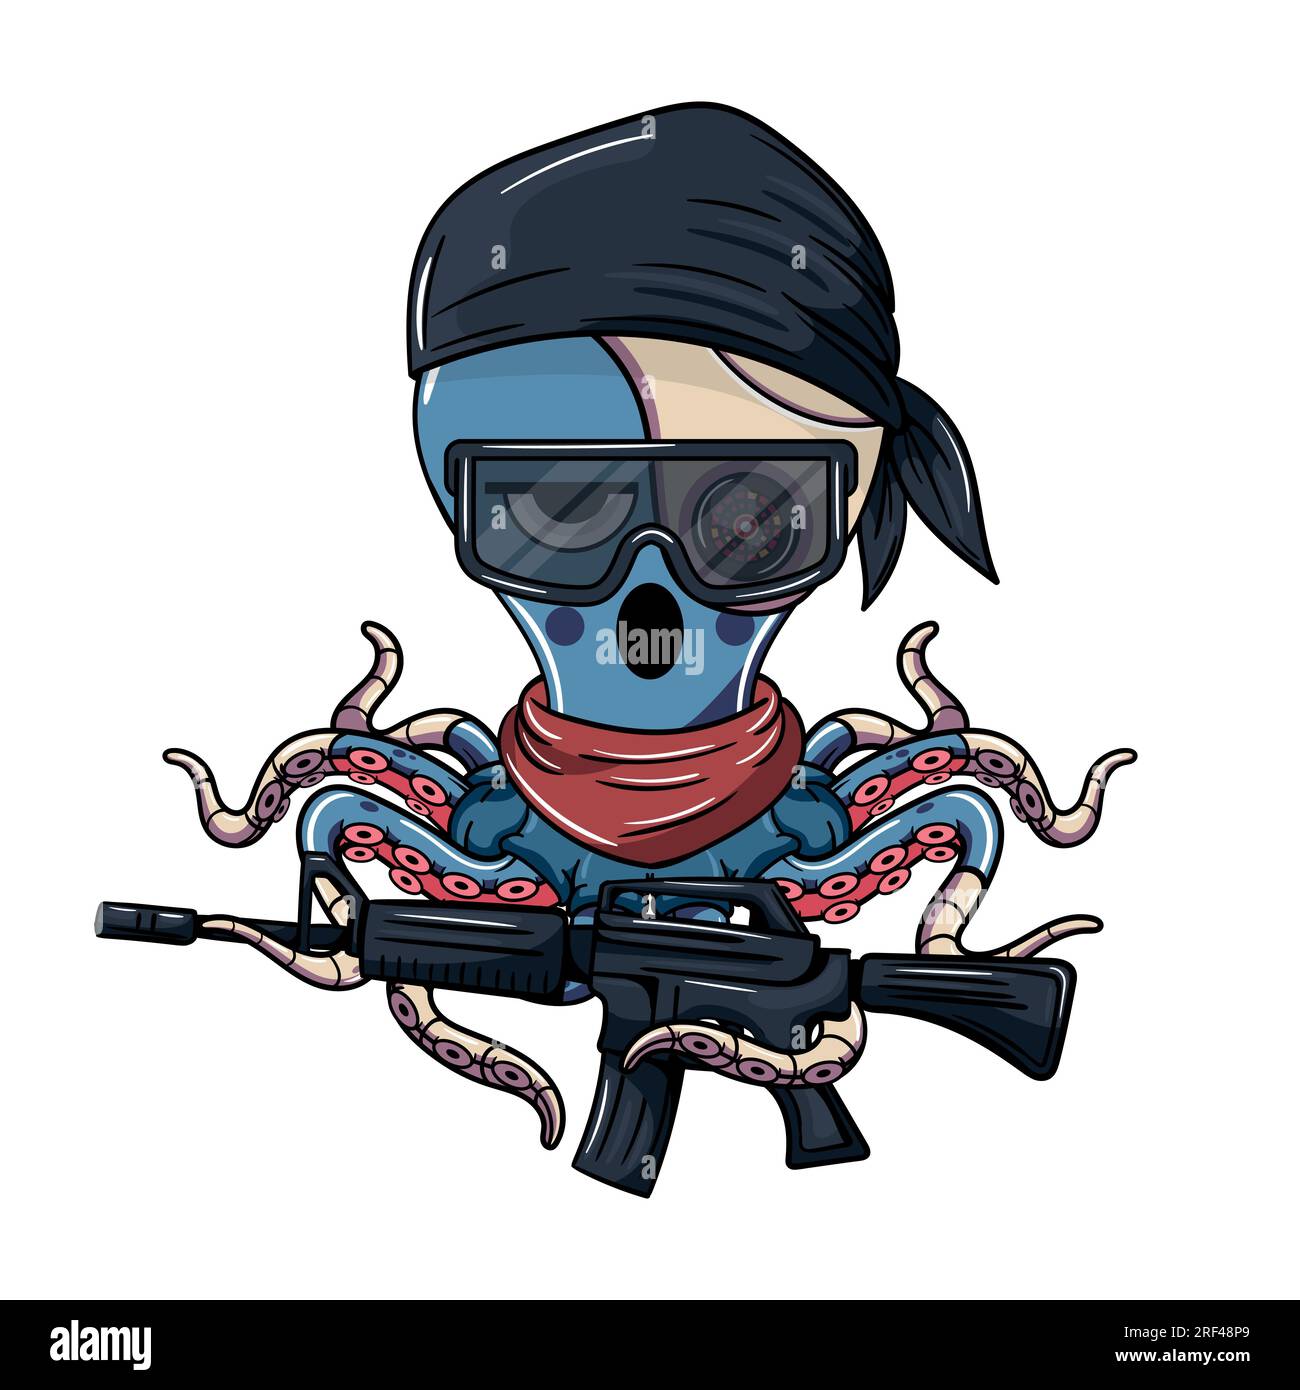 Personaggio dei cartoni animati di pioppo di cyborg annoiato in una bandana nera, che indossa occhiali e una mitragliatrice. Illustrazione per fantasy, fantascienza e avventura Illustrazione Vettoriale